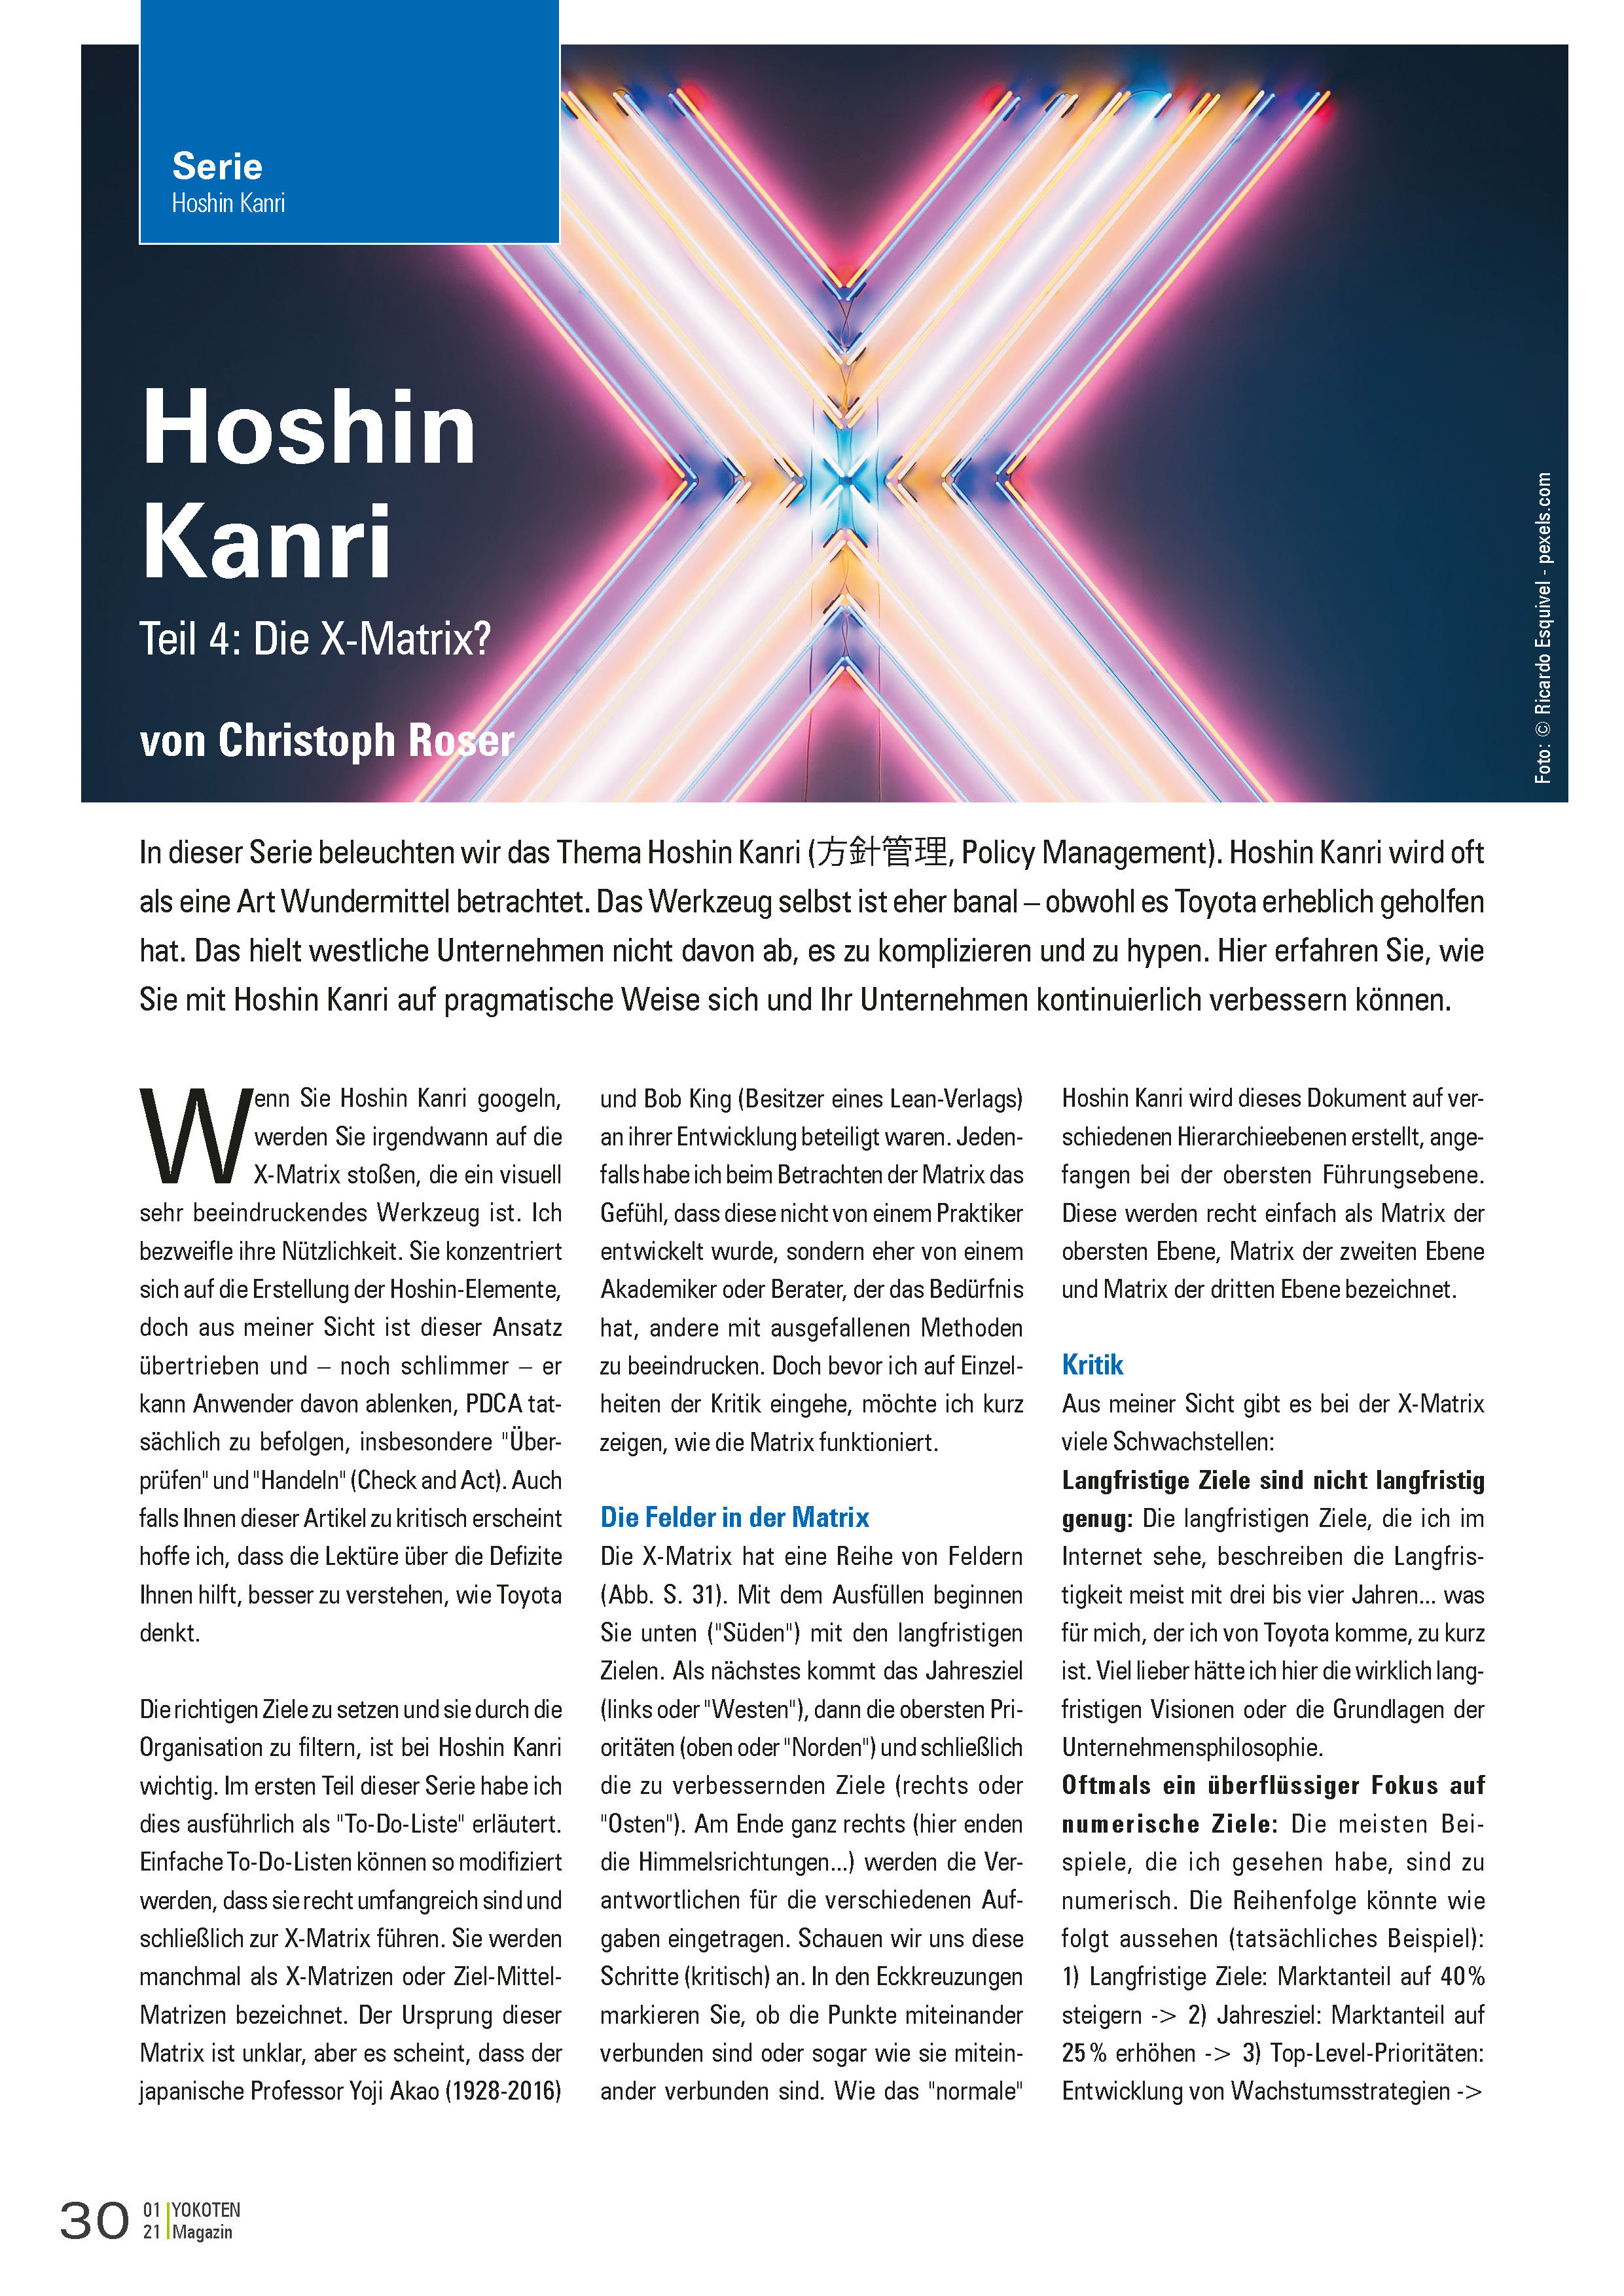 Hoshin Kanri | Die X-Matrix  - Teil 4  - Artikel aus Fachmagazin YOKOTEN 2021-01